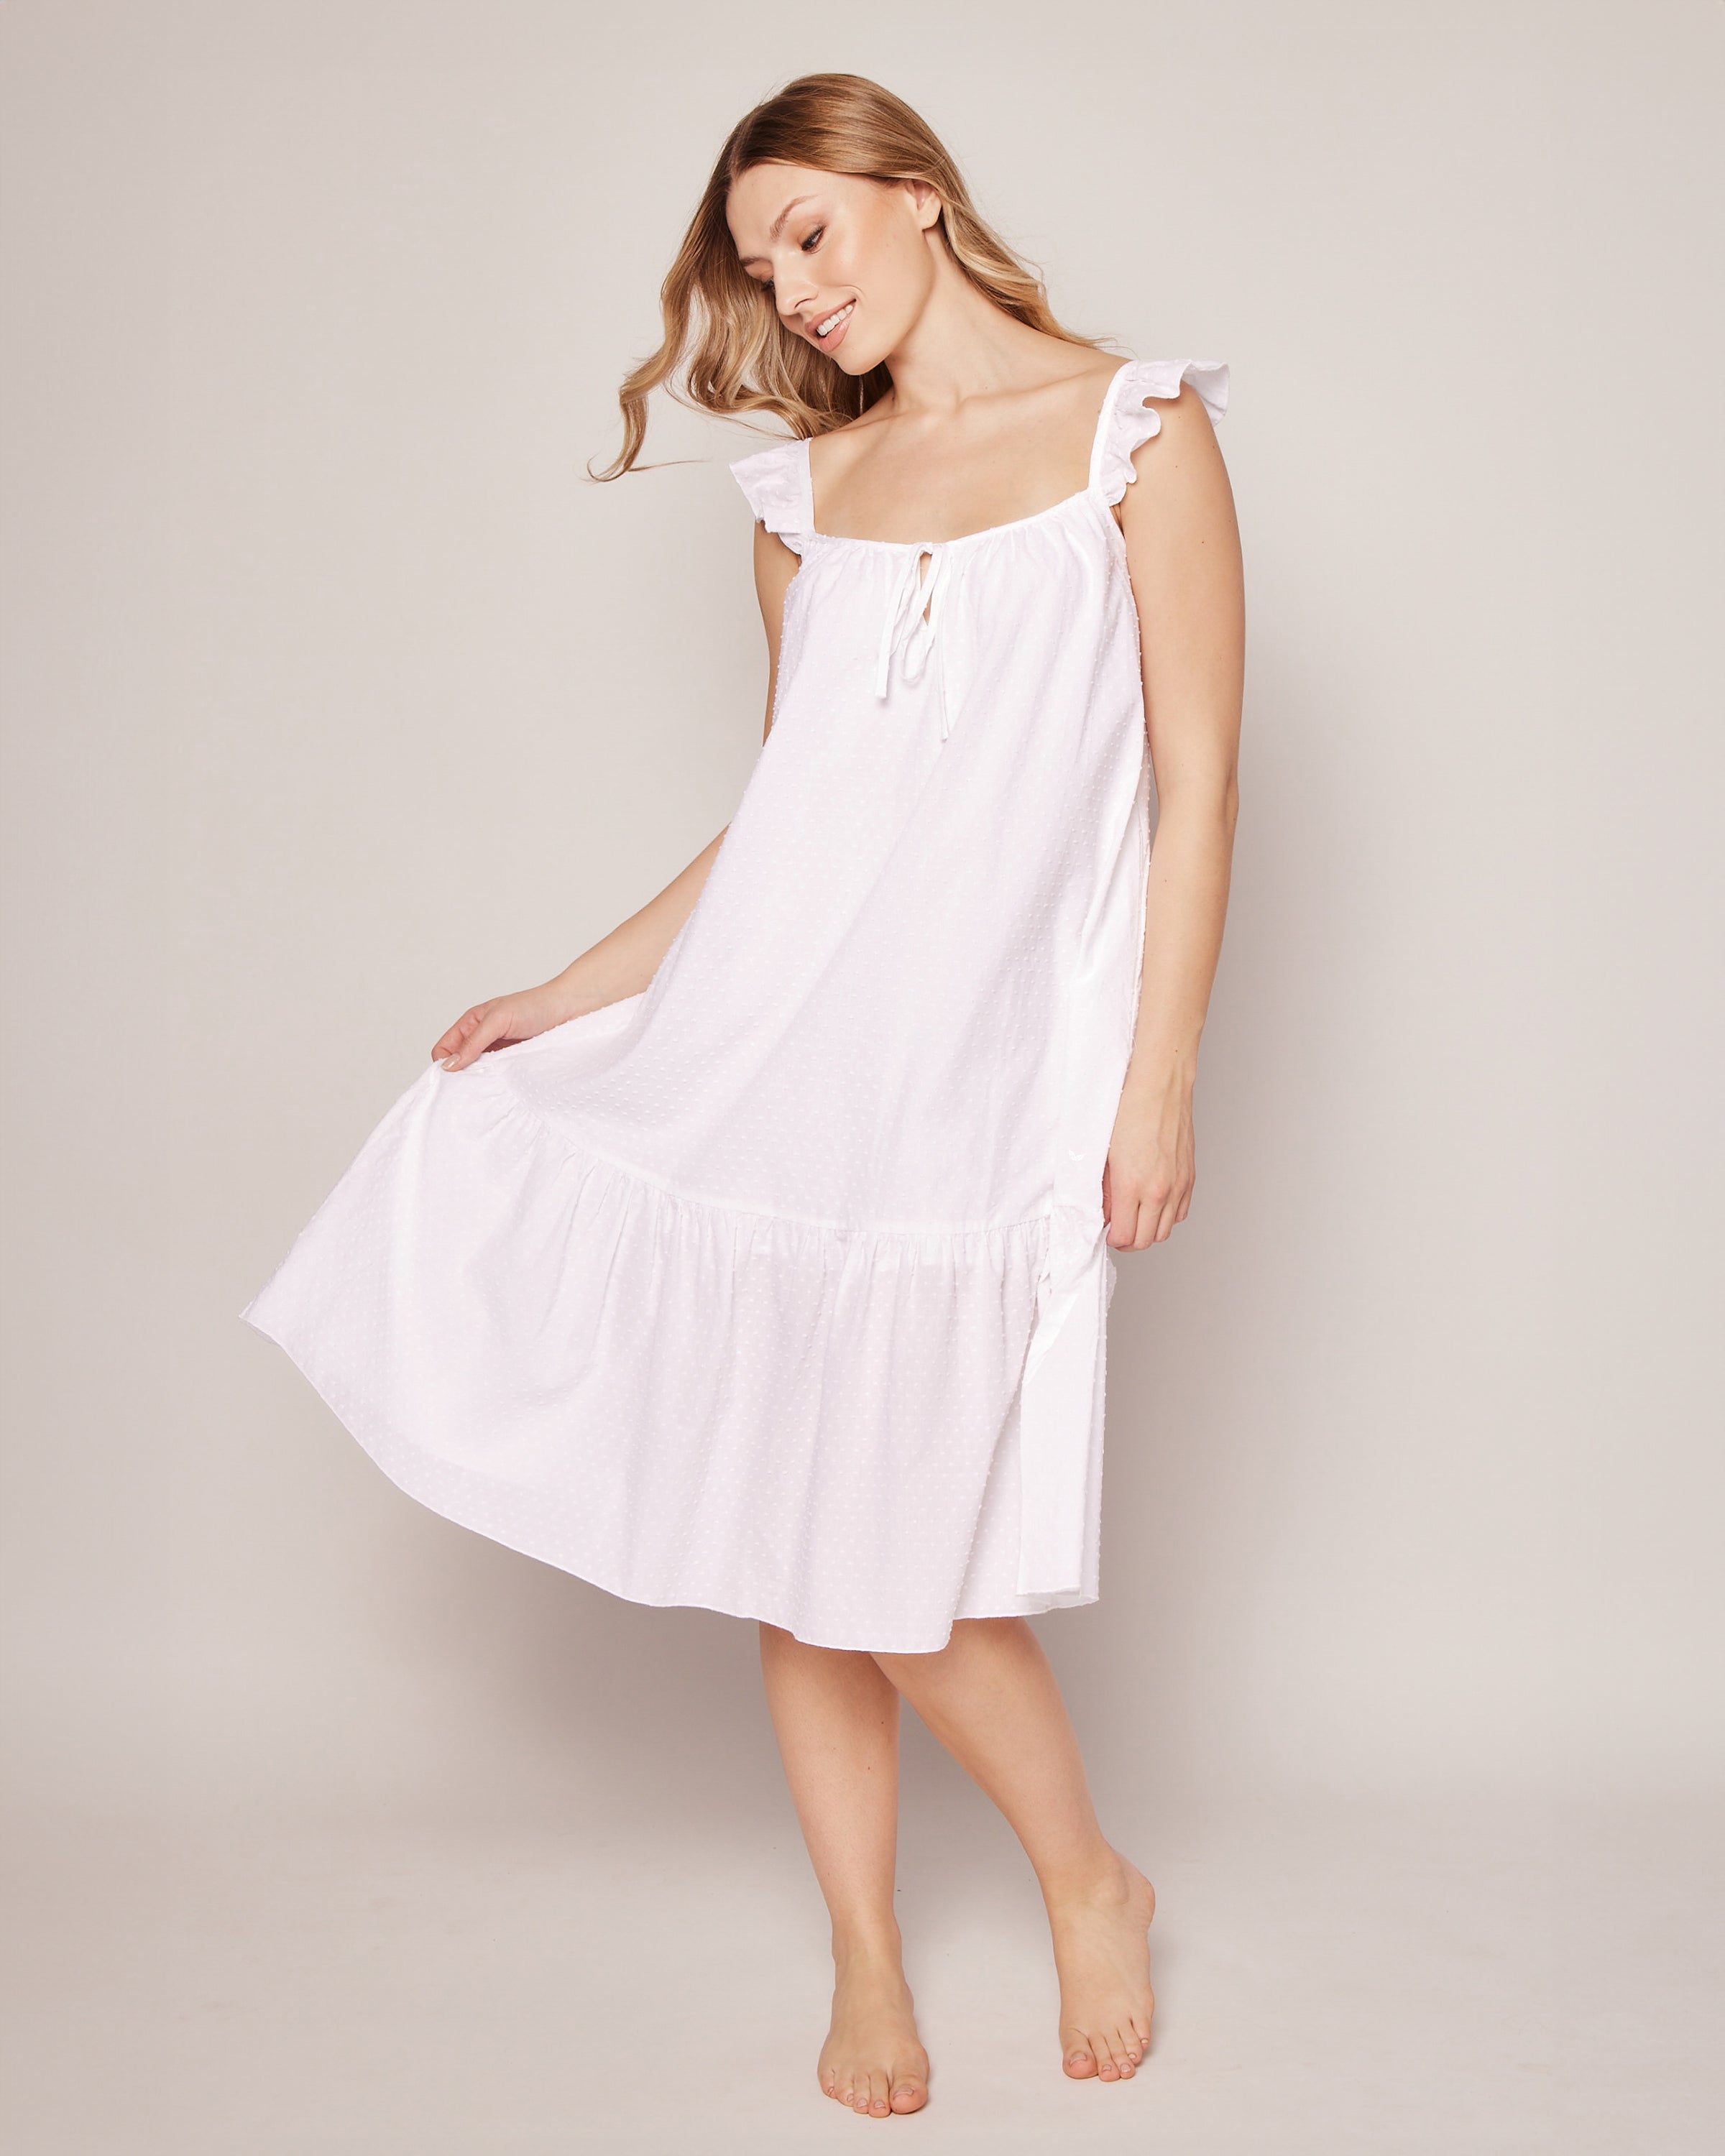 Women's Swiss Dots Celeste Nightgown in White